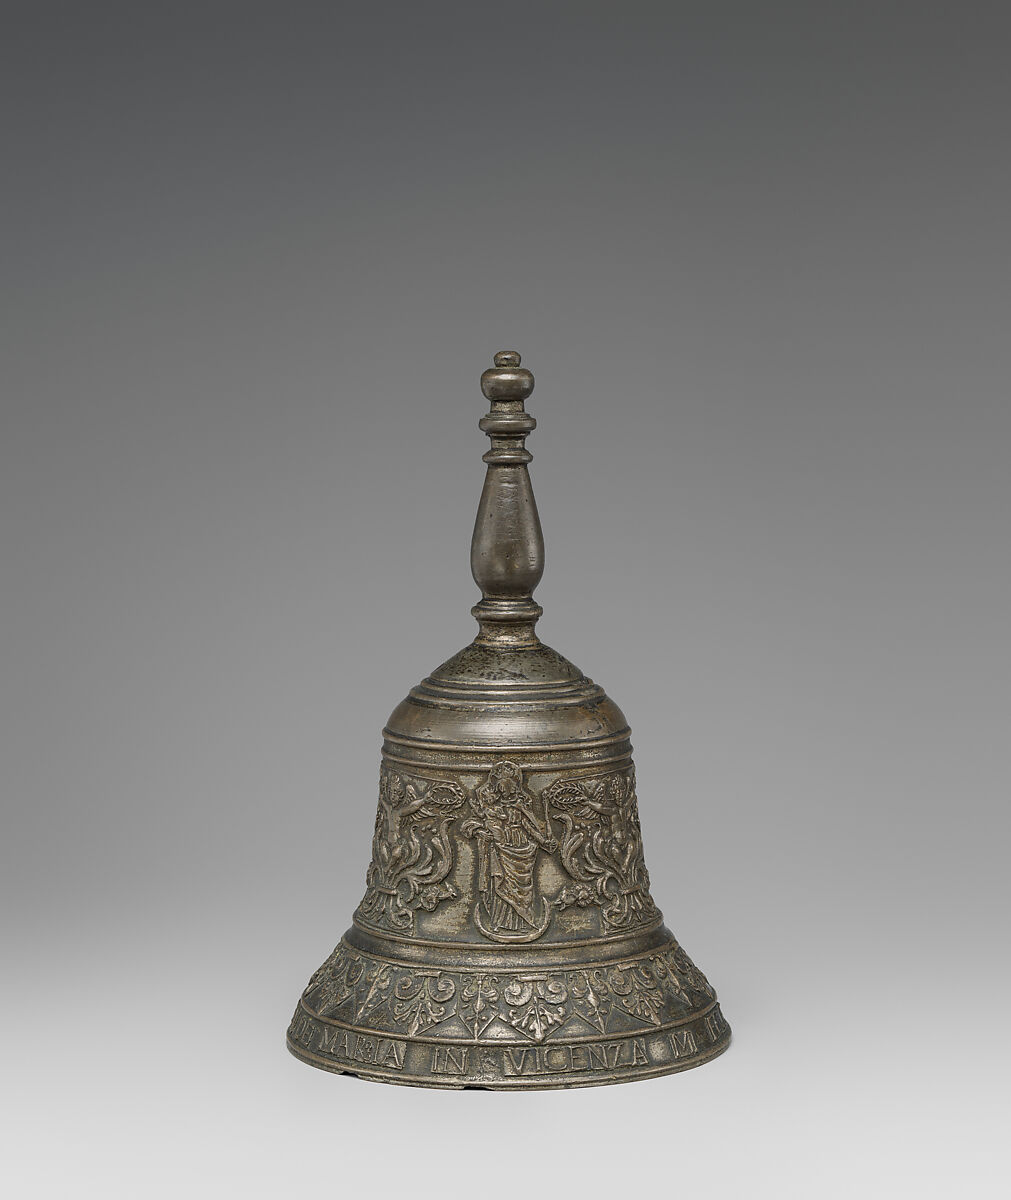 Bell, Giovanni Battista de Maria (active Vicenza), Bronze, Italian, Vicenza 